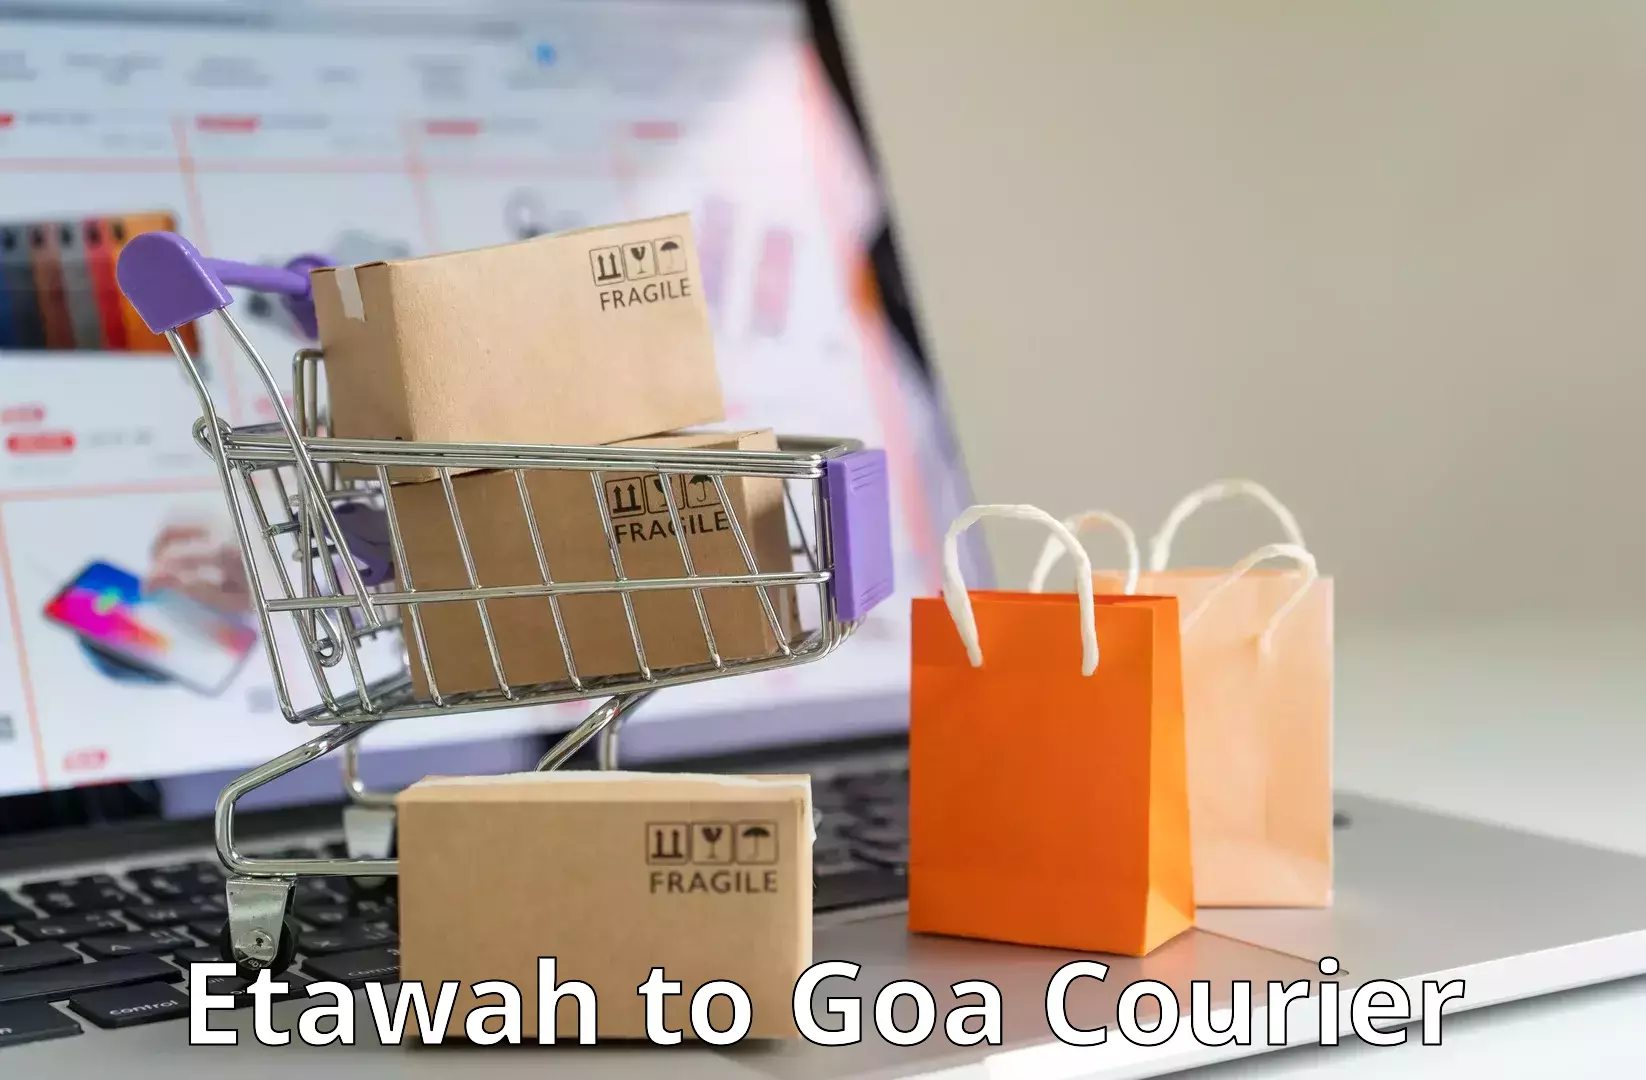 Efficient parcel service Etawah to NIT Goa